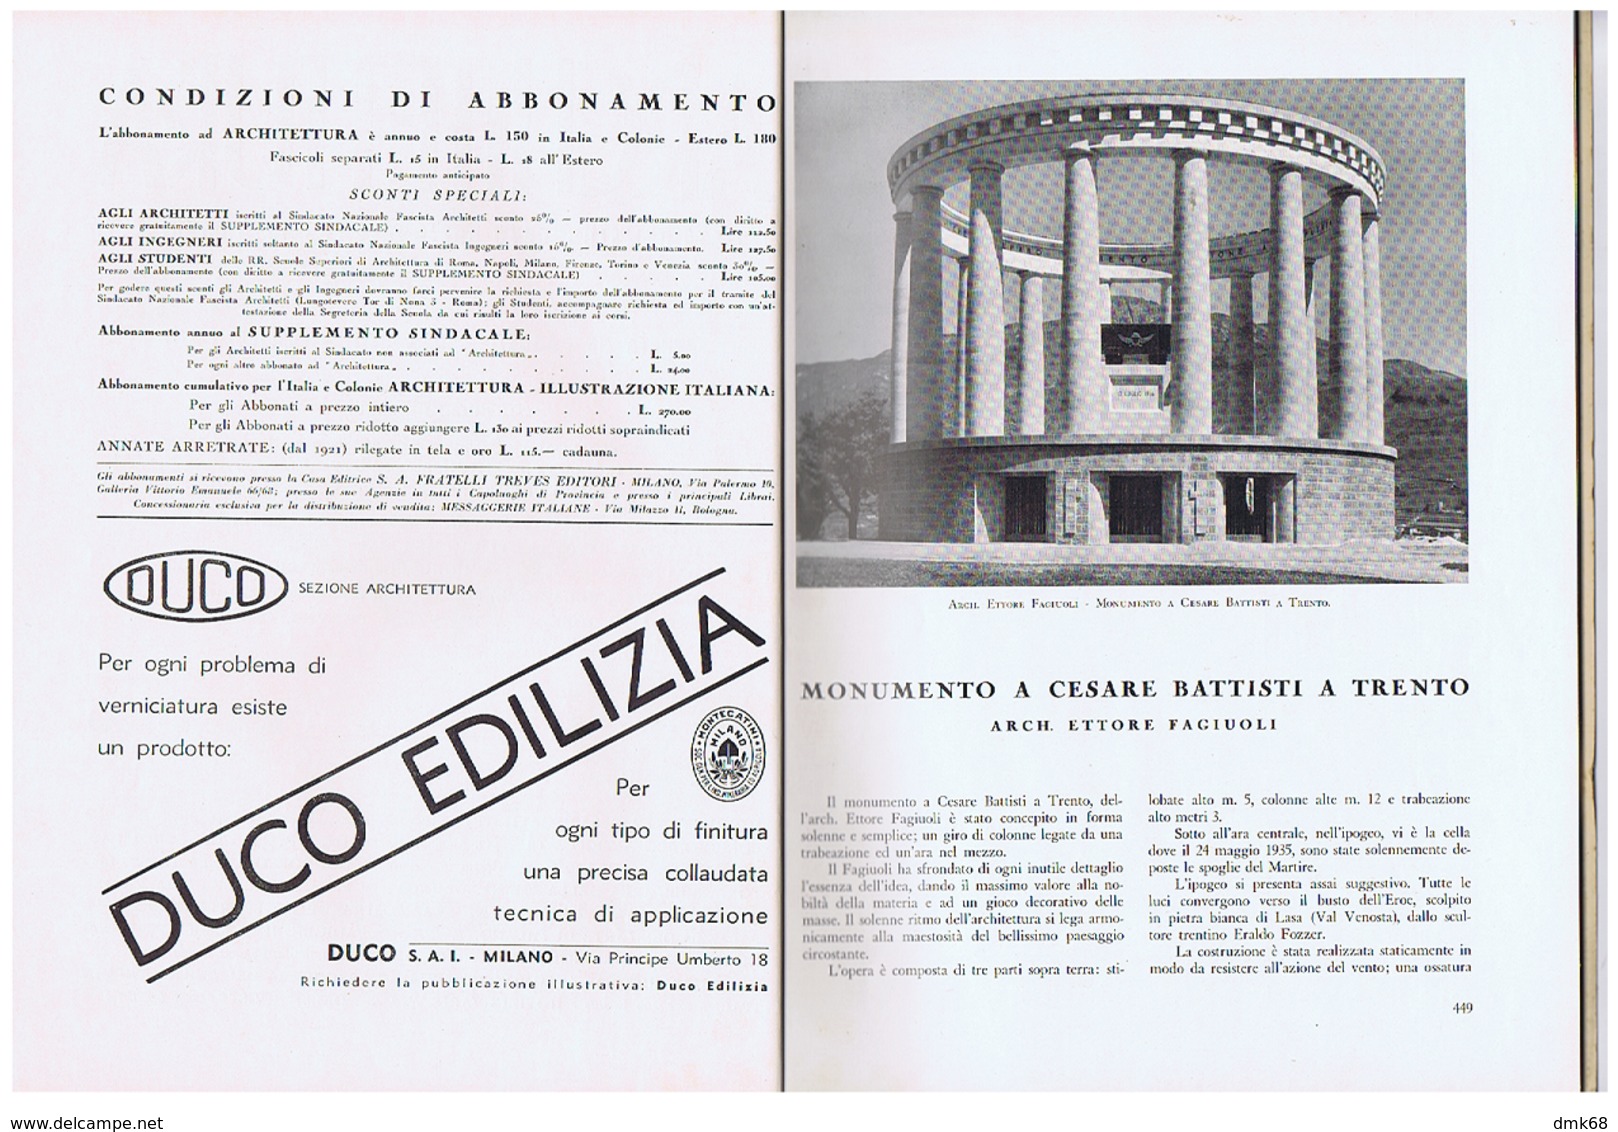 ARCHITETTURA / FASCISMO - MASSIMO PIACENTINI - 1935 - TRENTO / TORRE LITTORIA MILANO / MOSTRA SPORT ITALIANO A MILANO - Art, Design, Decoration